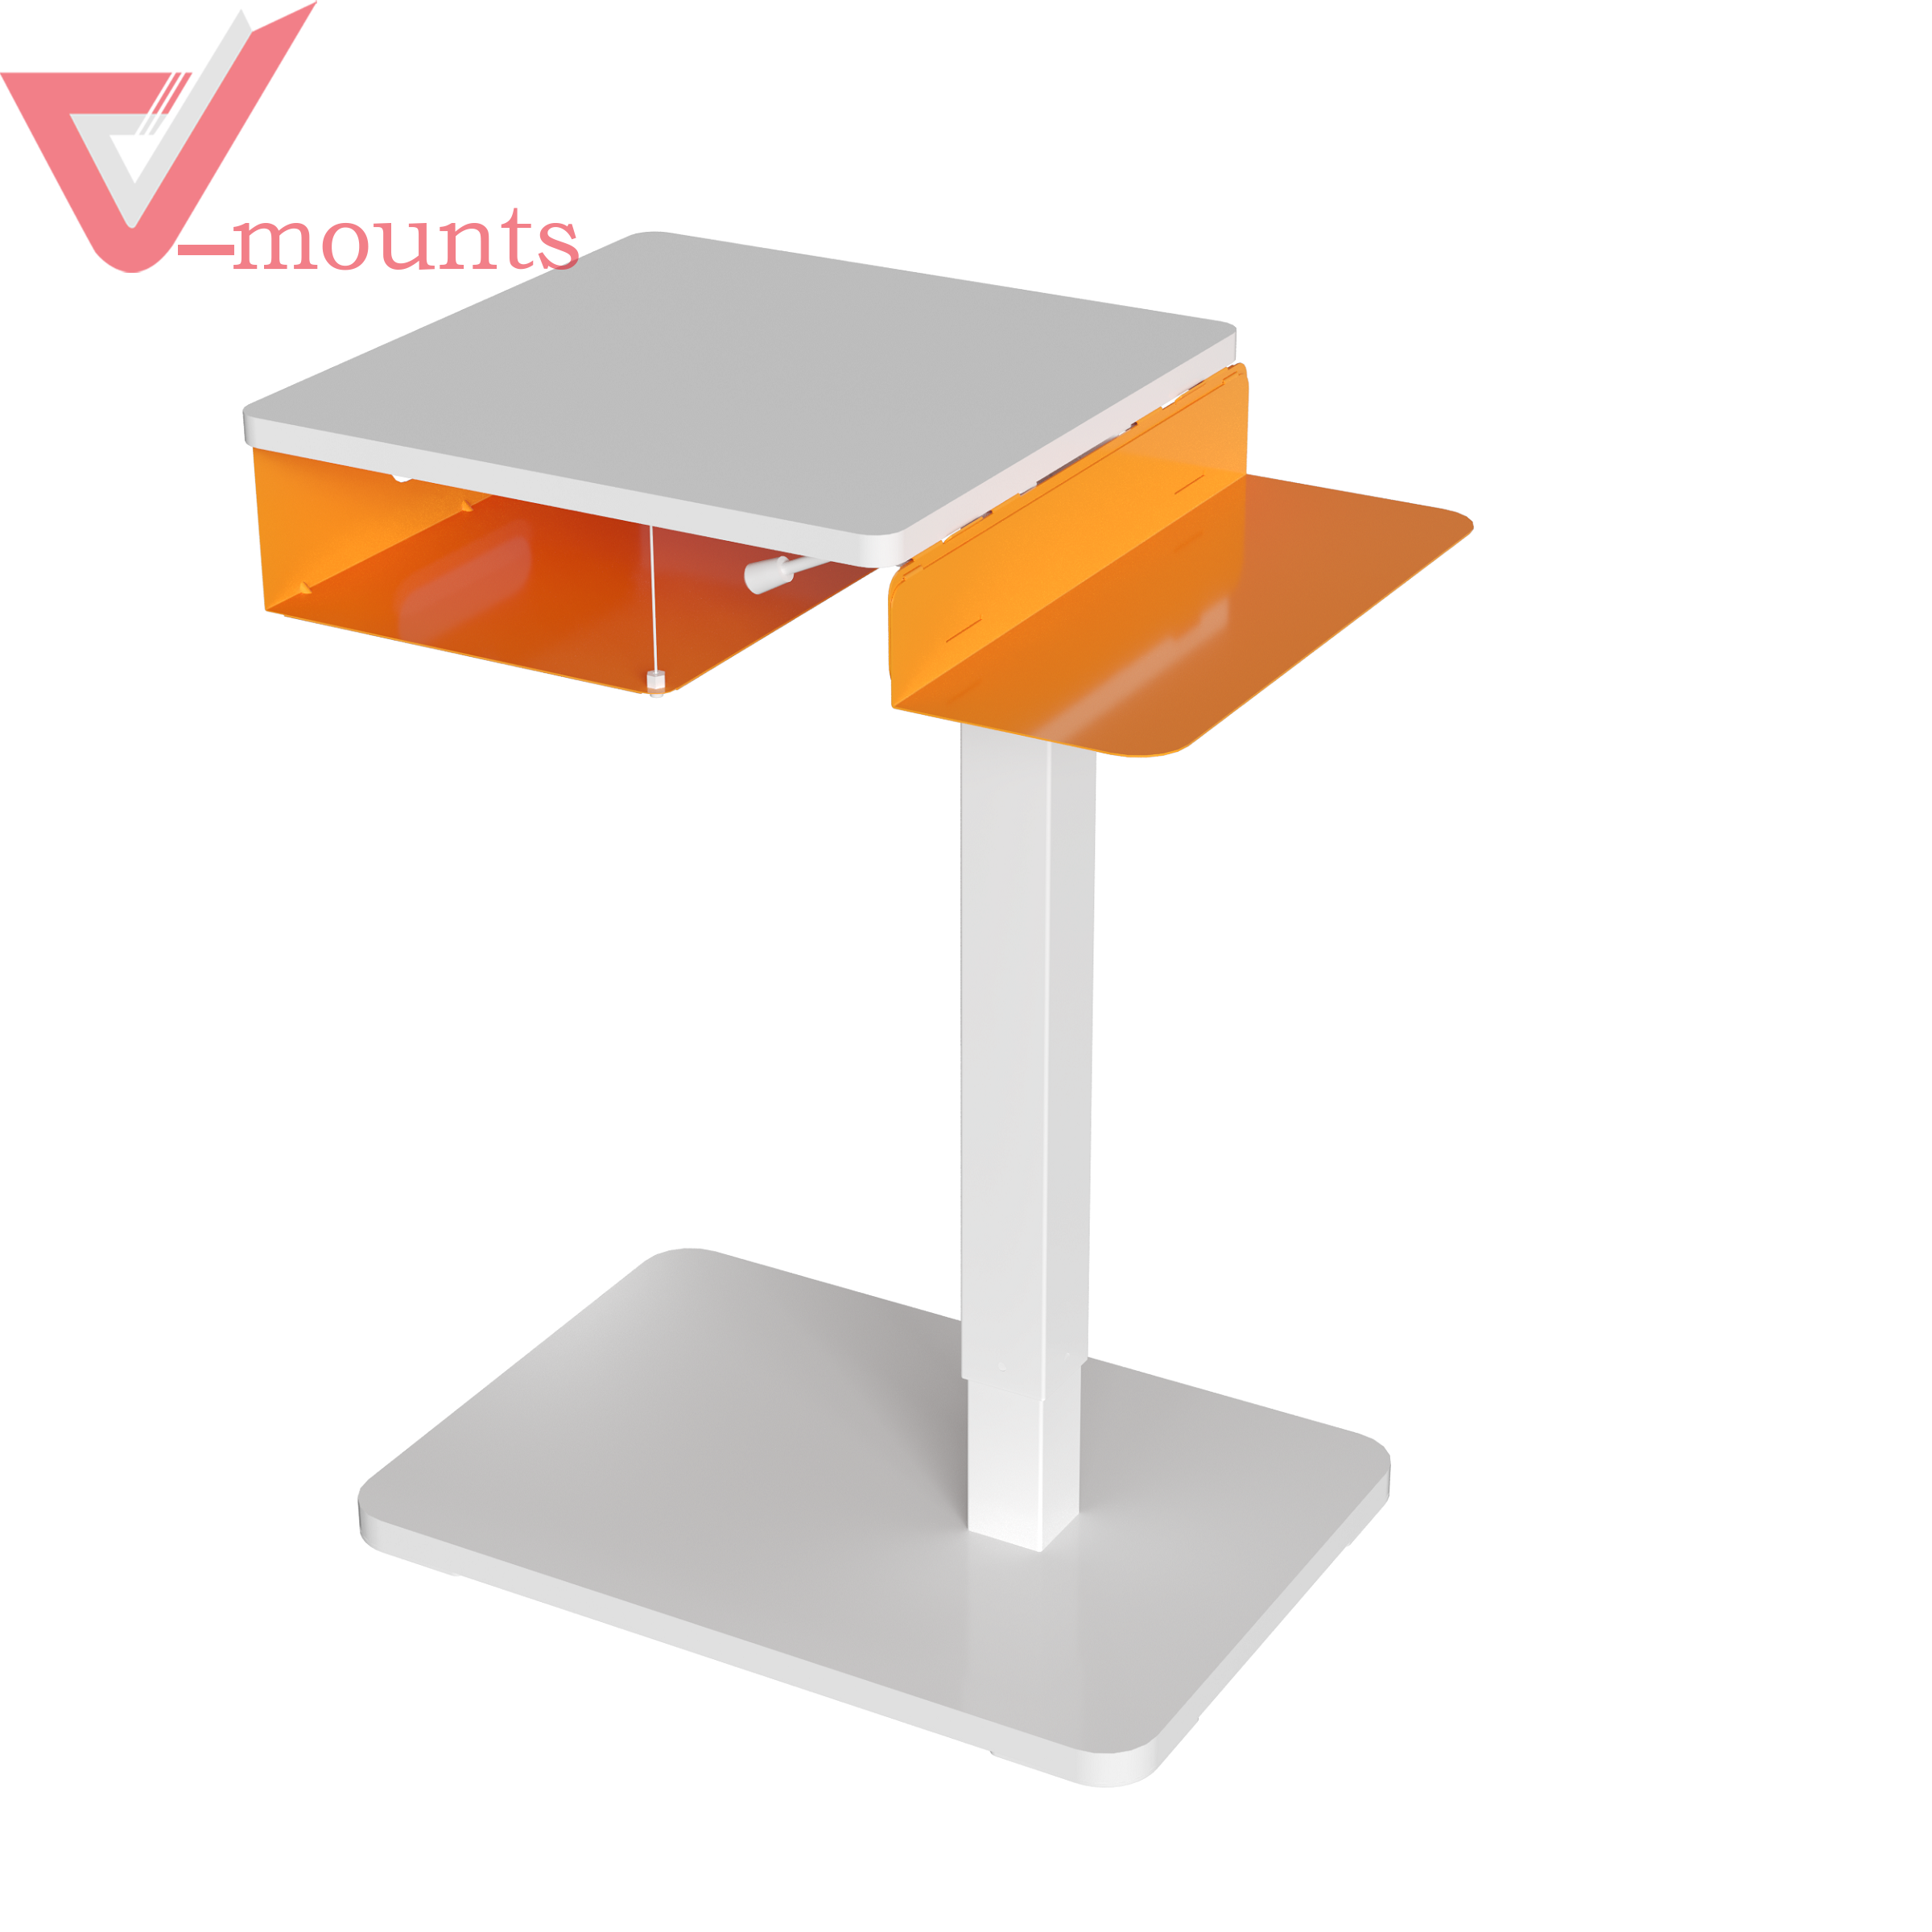 V-mounts Hidden Caster Movable Height Adjustable Desk With Detachable Storage Drawer VM-FDS001